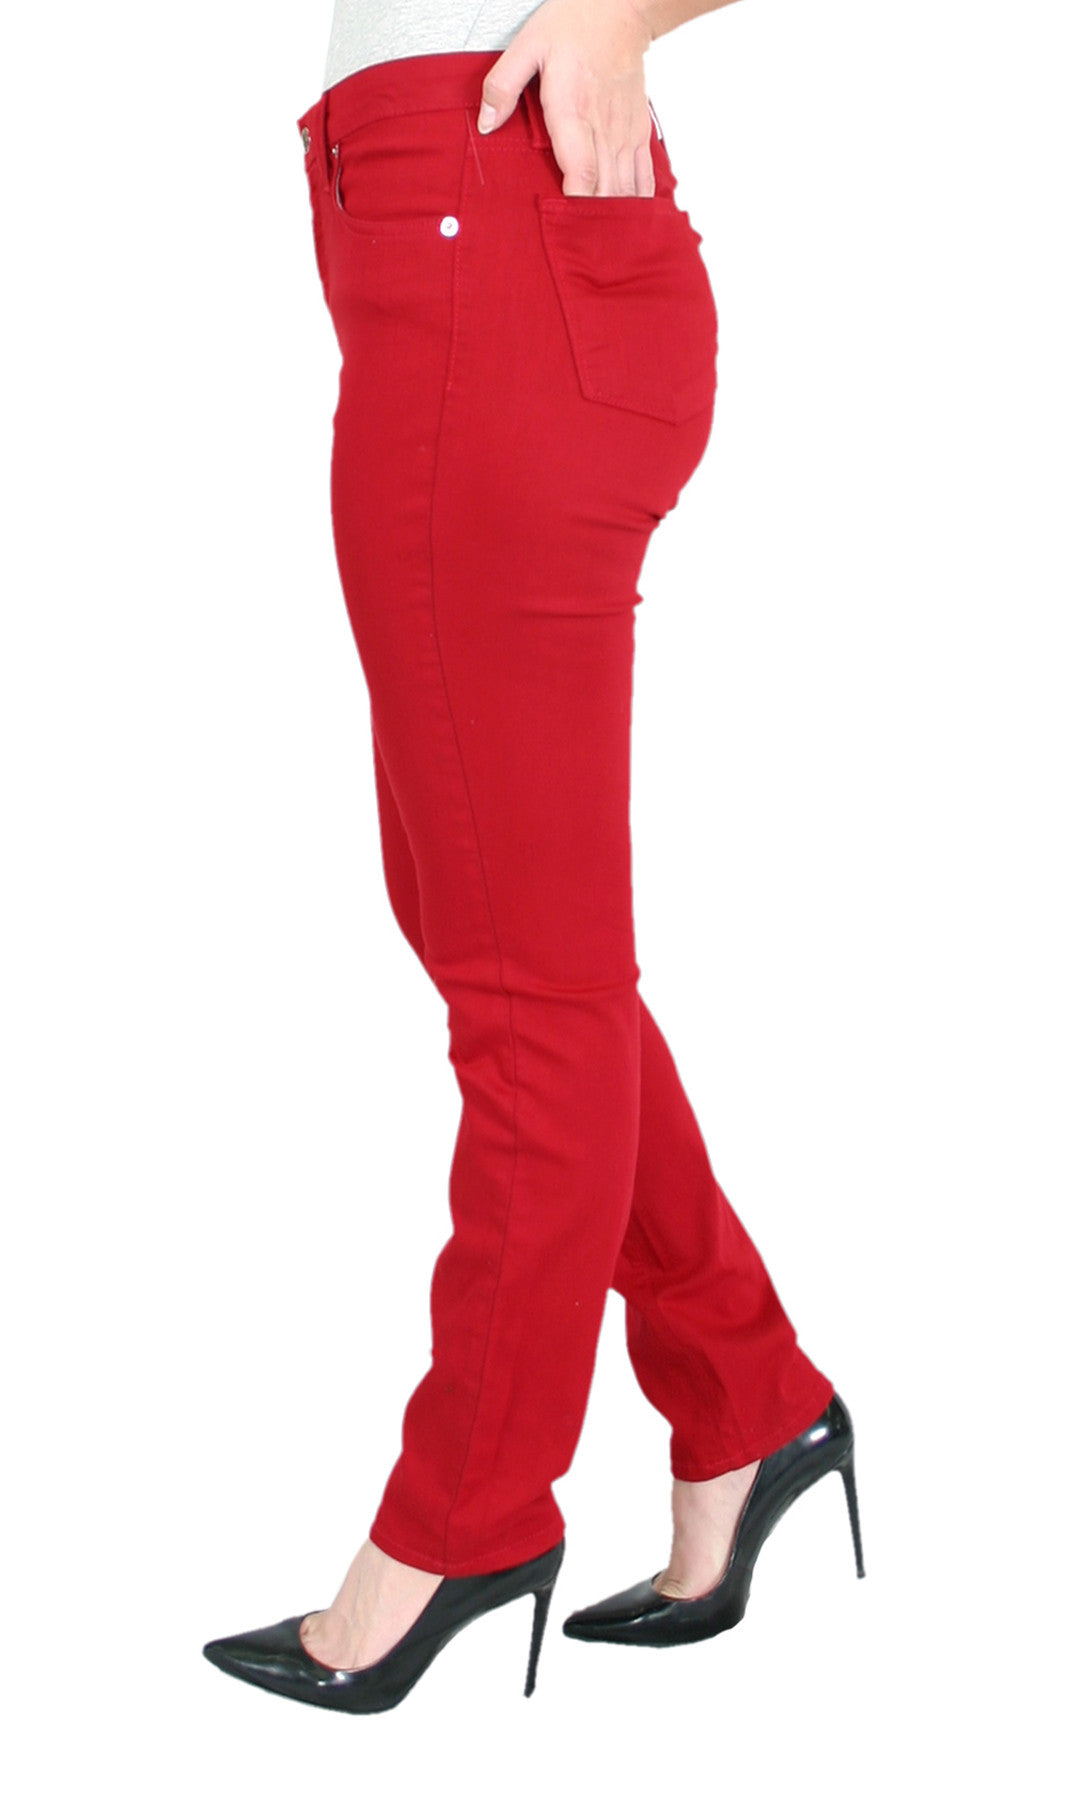 TrueSlim™ Red Jeans